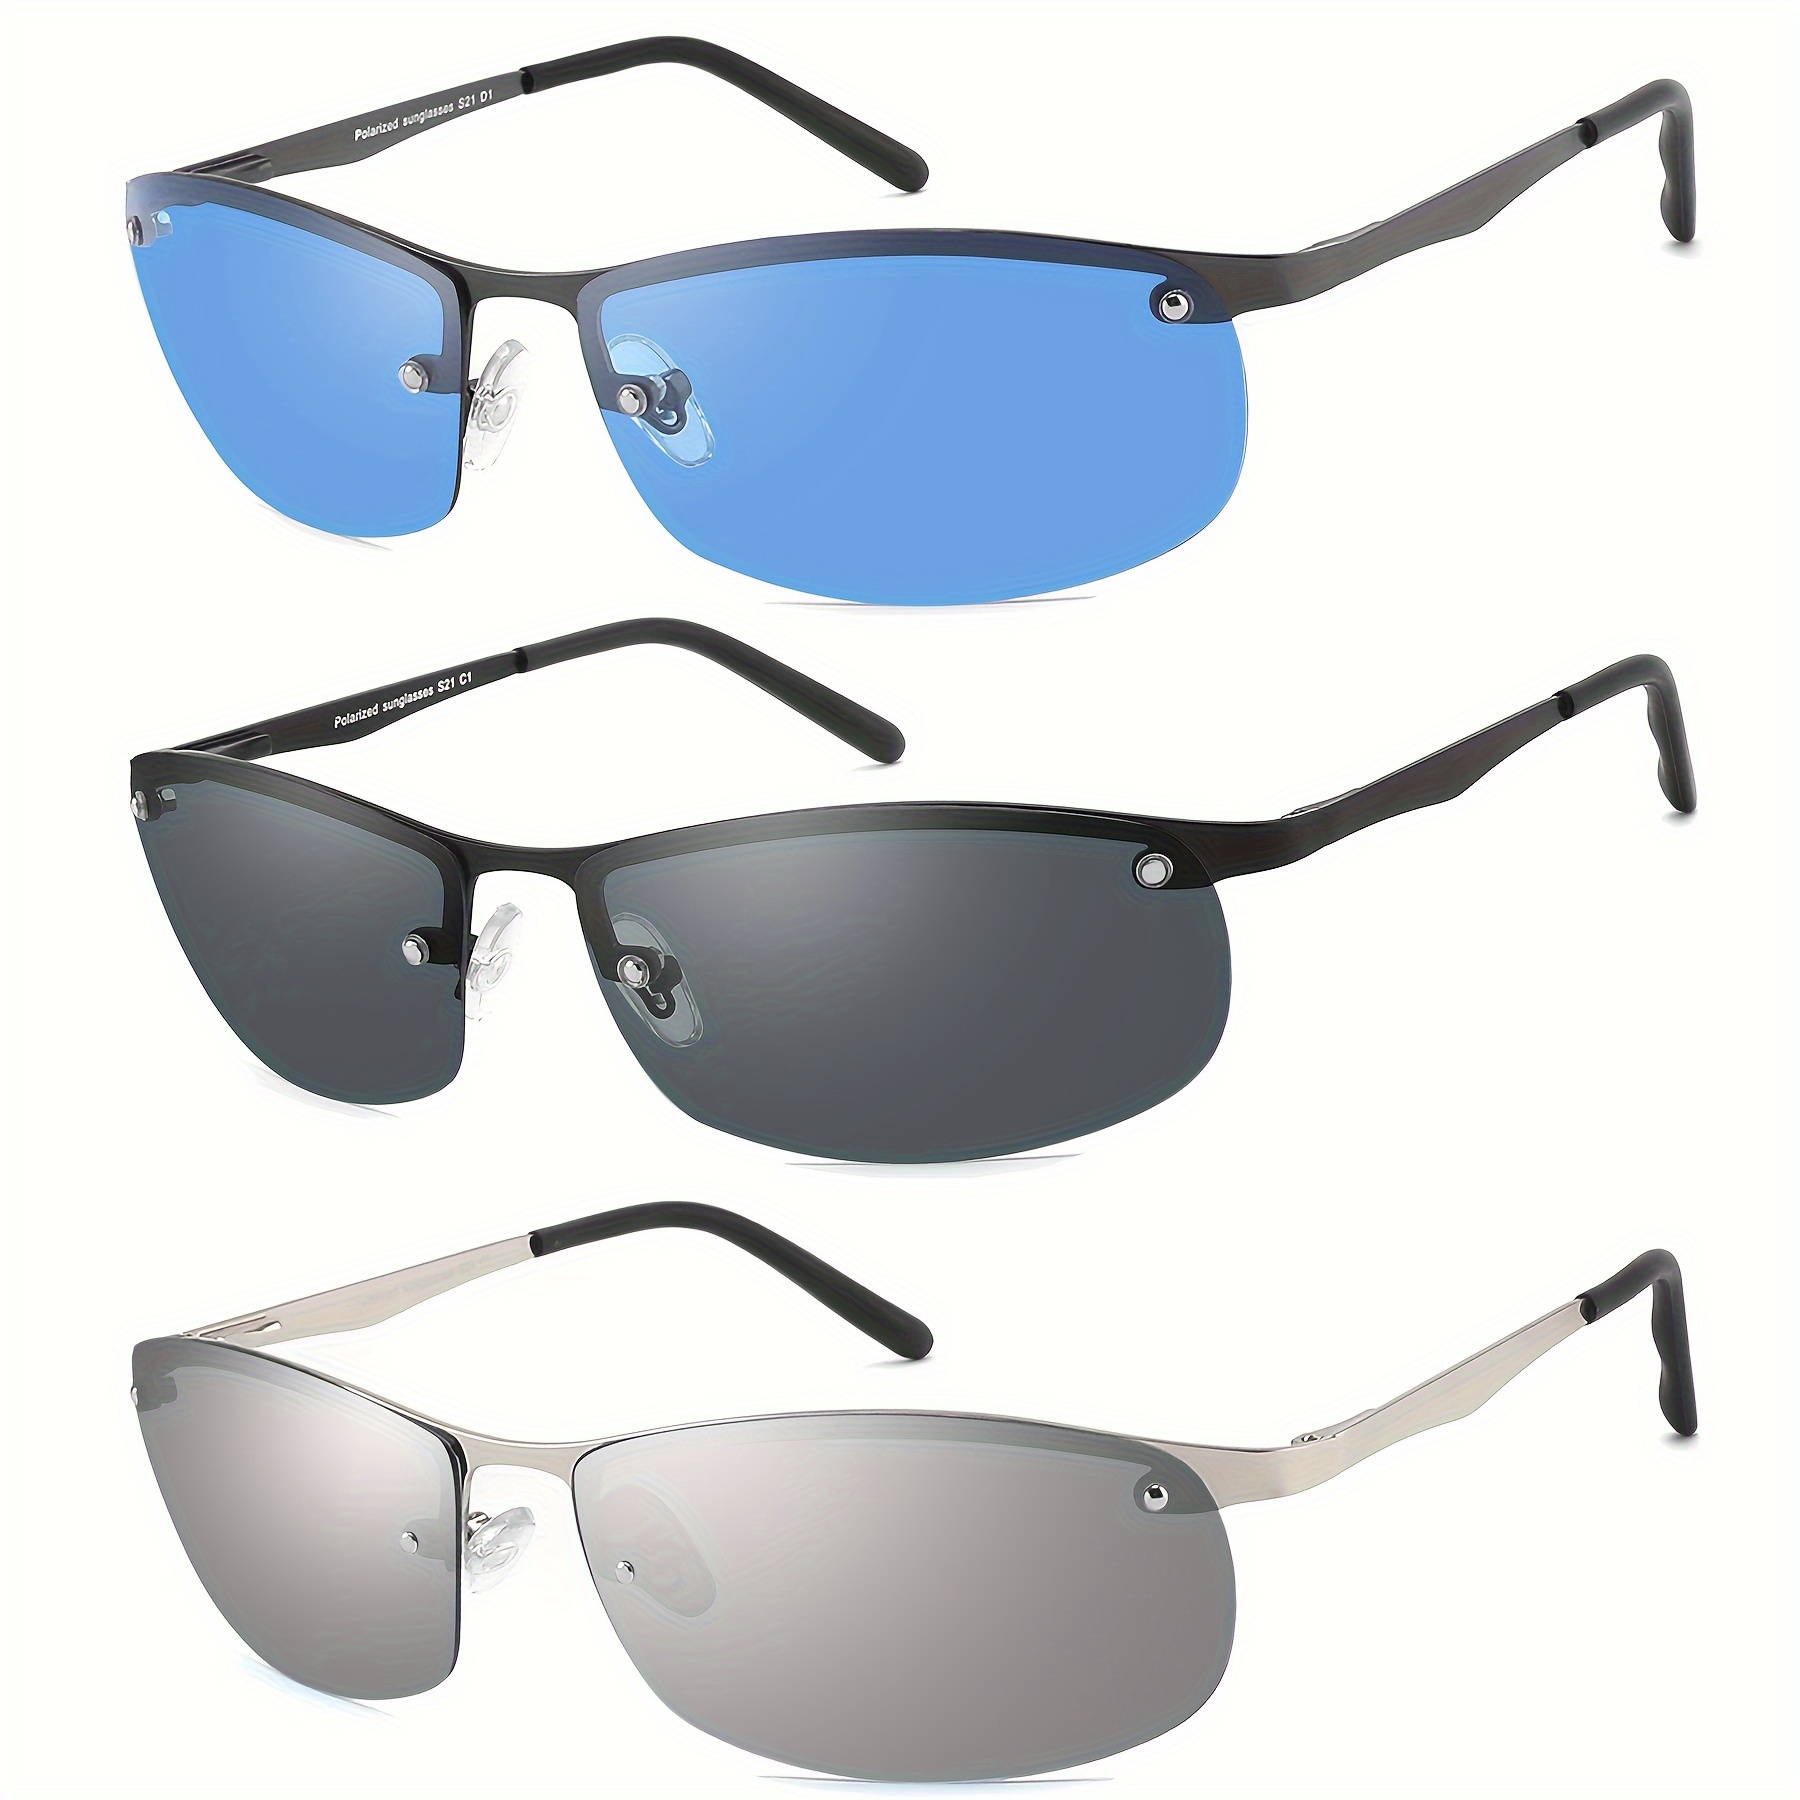 

Jjwell 3 Pack Polarized Sunglasses For Men, Semi-rimless Frame Driving Fishing Sun Glasses Uv400 Block Glare/blue Light